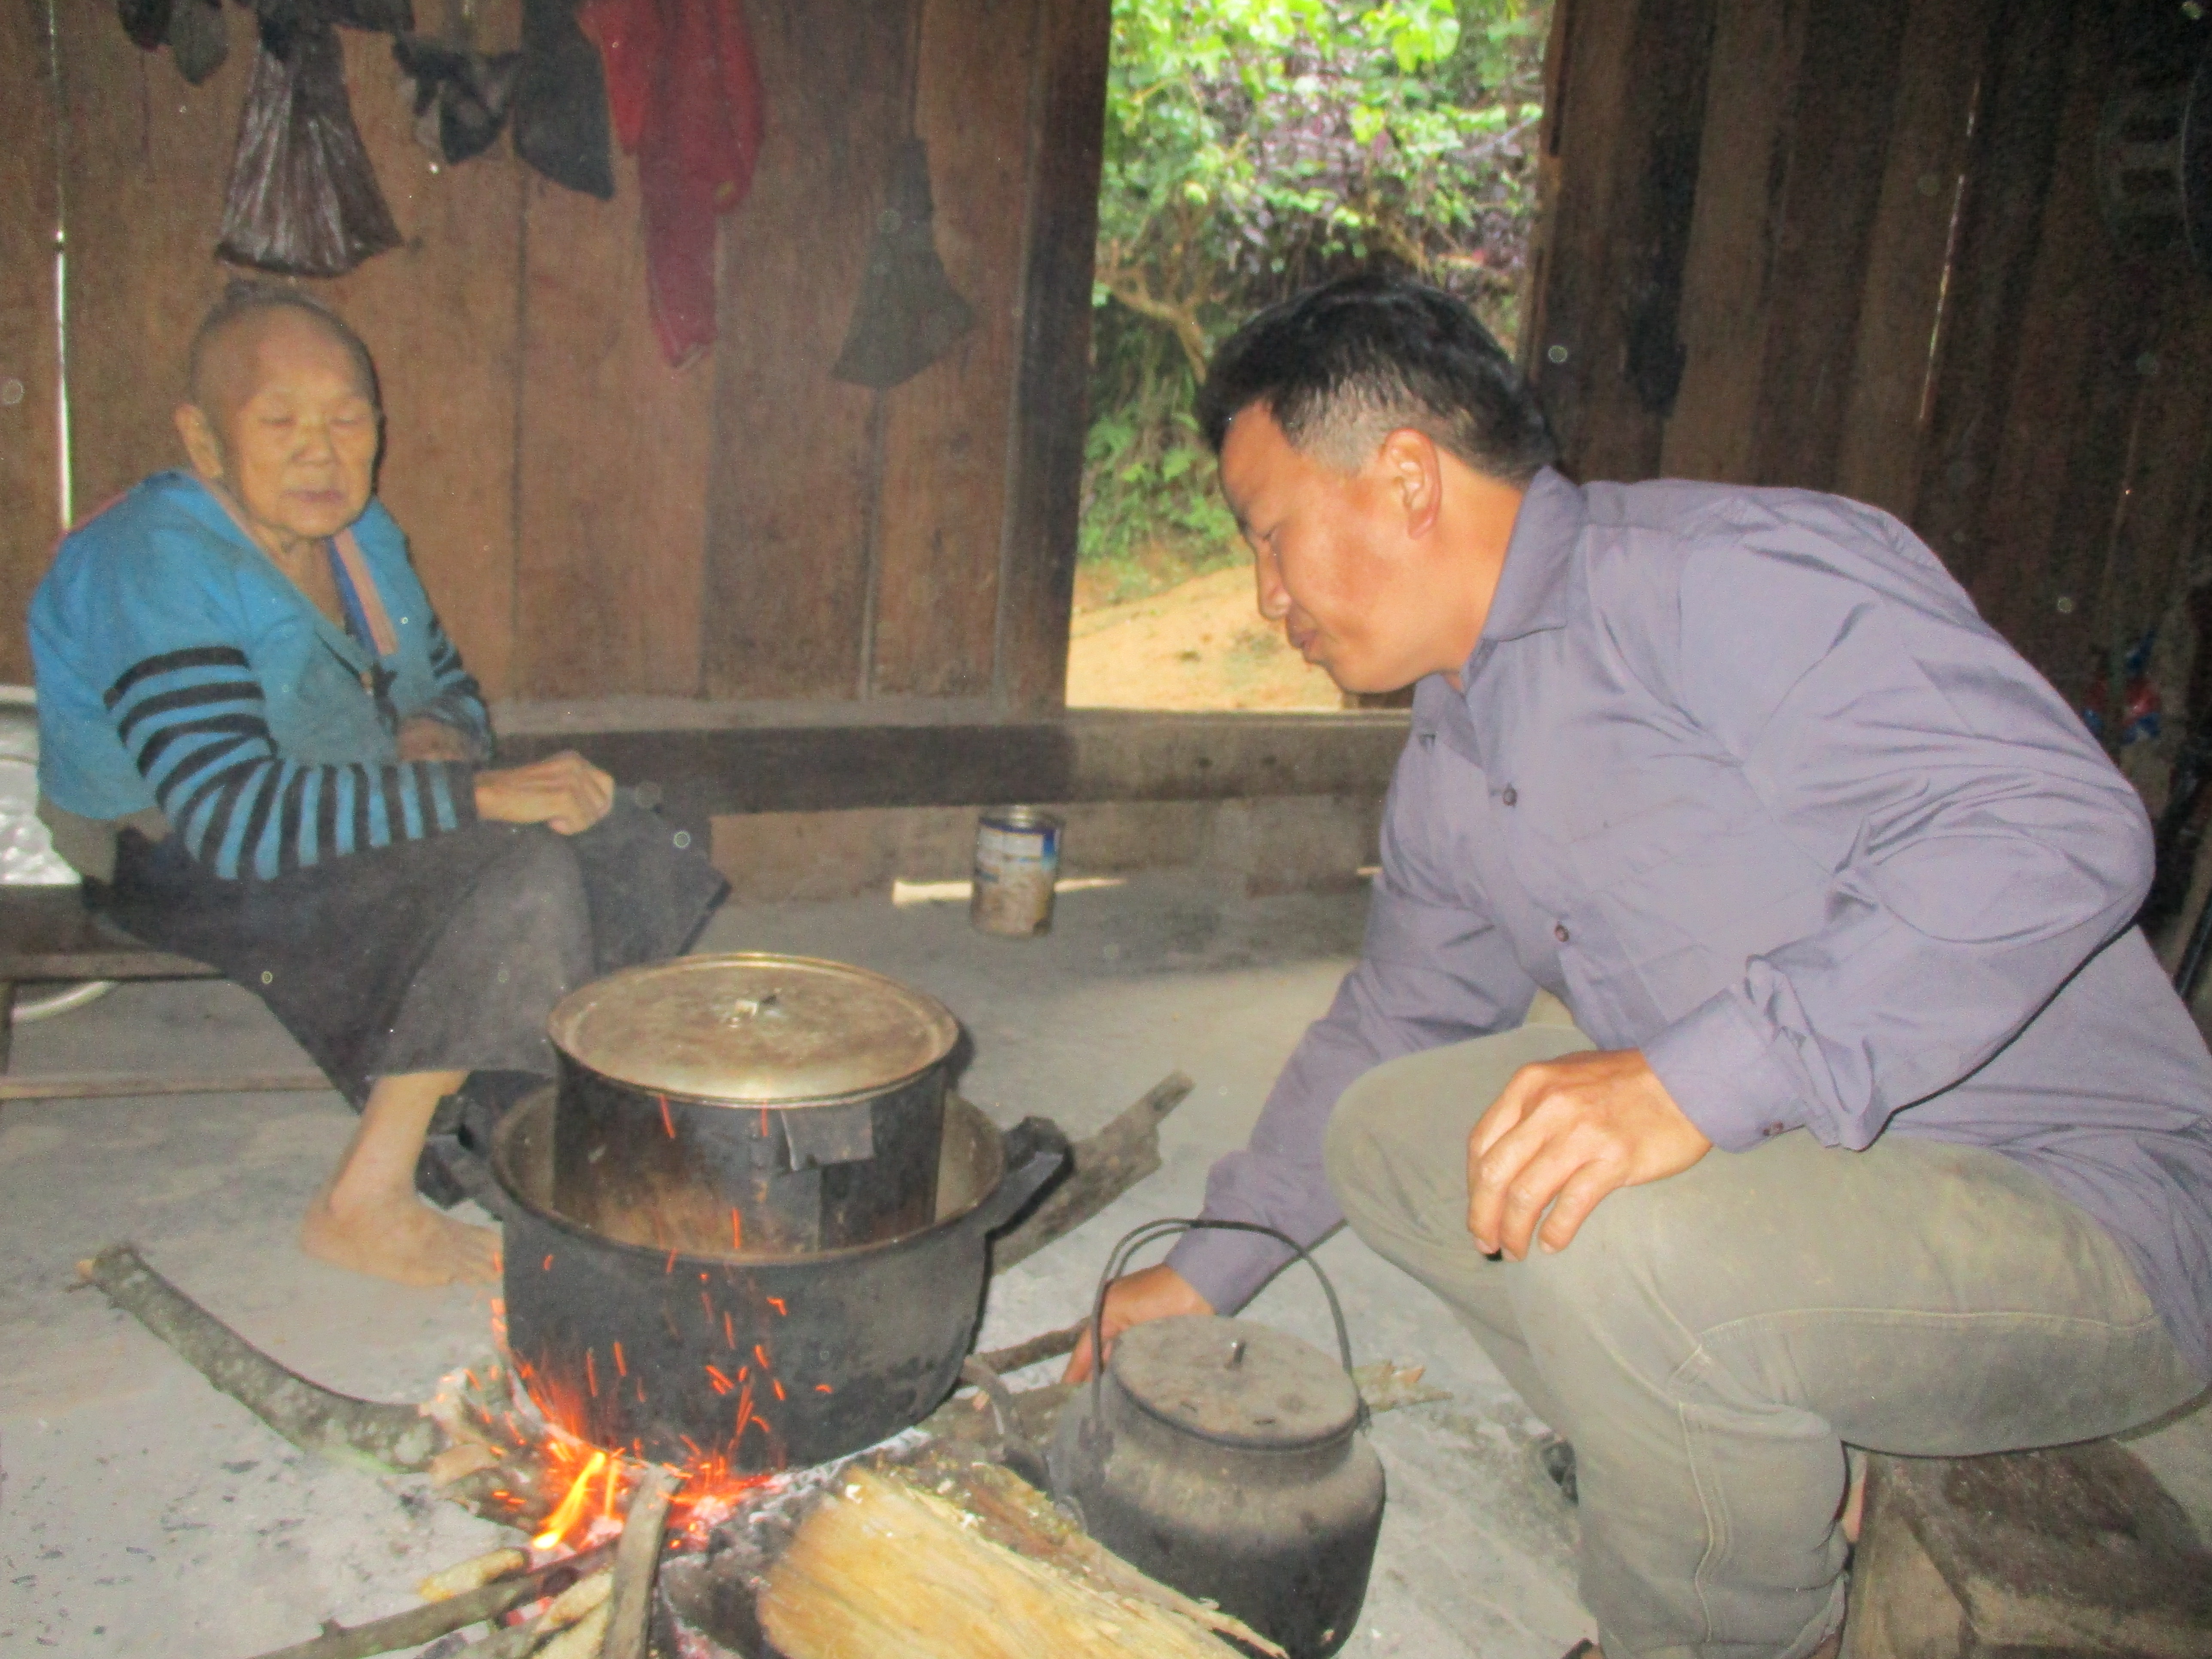 Cuộc sống của đồng bào Mông ở Mường Lát còn nhiều khó khăn vì chưa có điện lưới